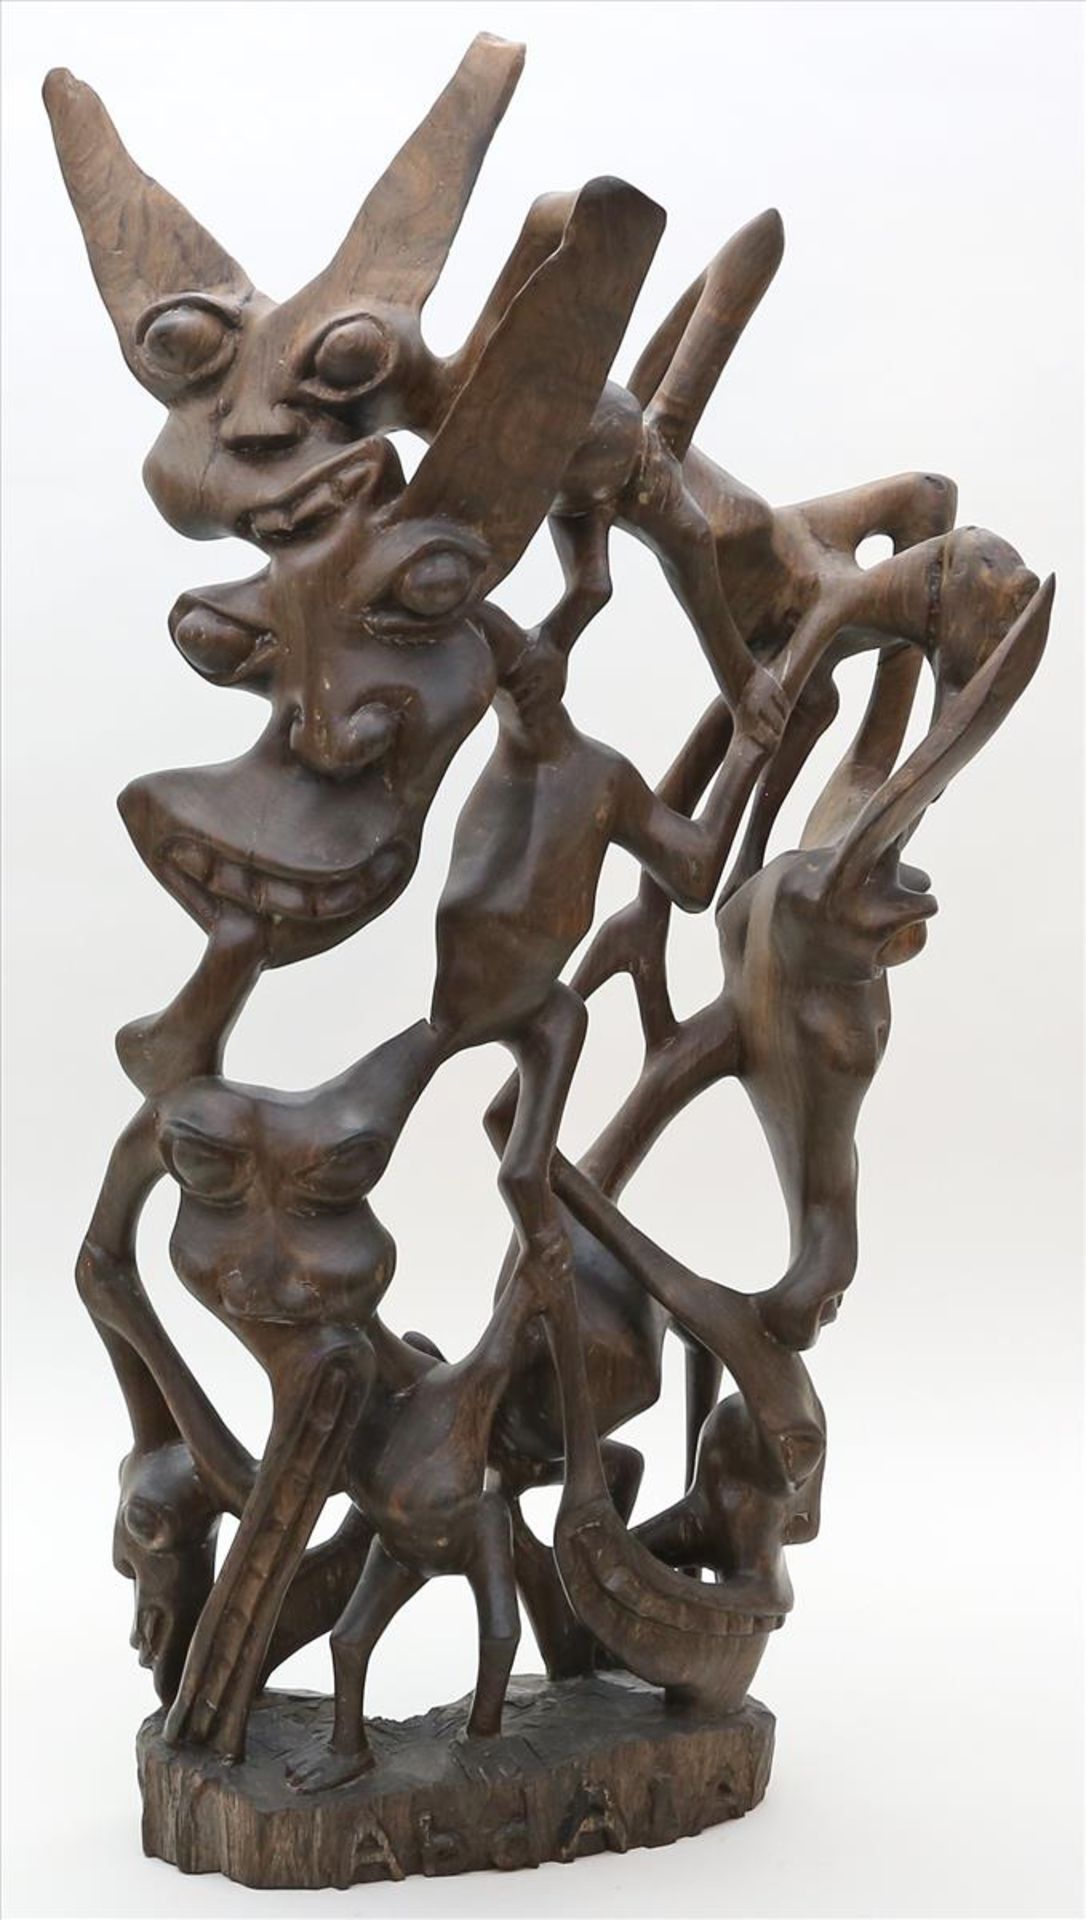 Skulpturengruppe "Tanzende Fabelwesen".Mittelbraunes Holz, durchbrochen geschnitzt. Afrika. H. 67